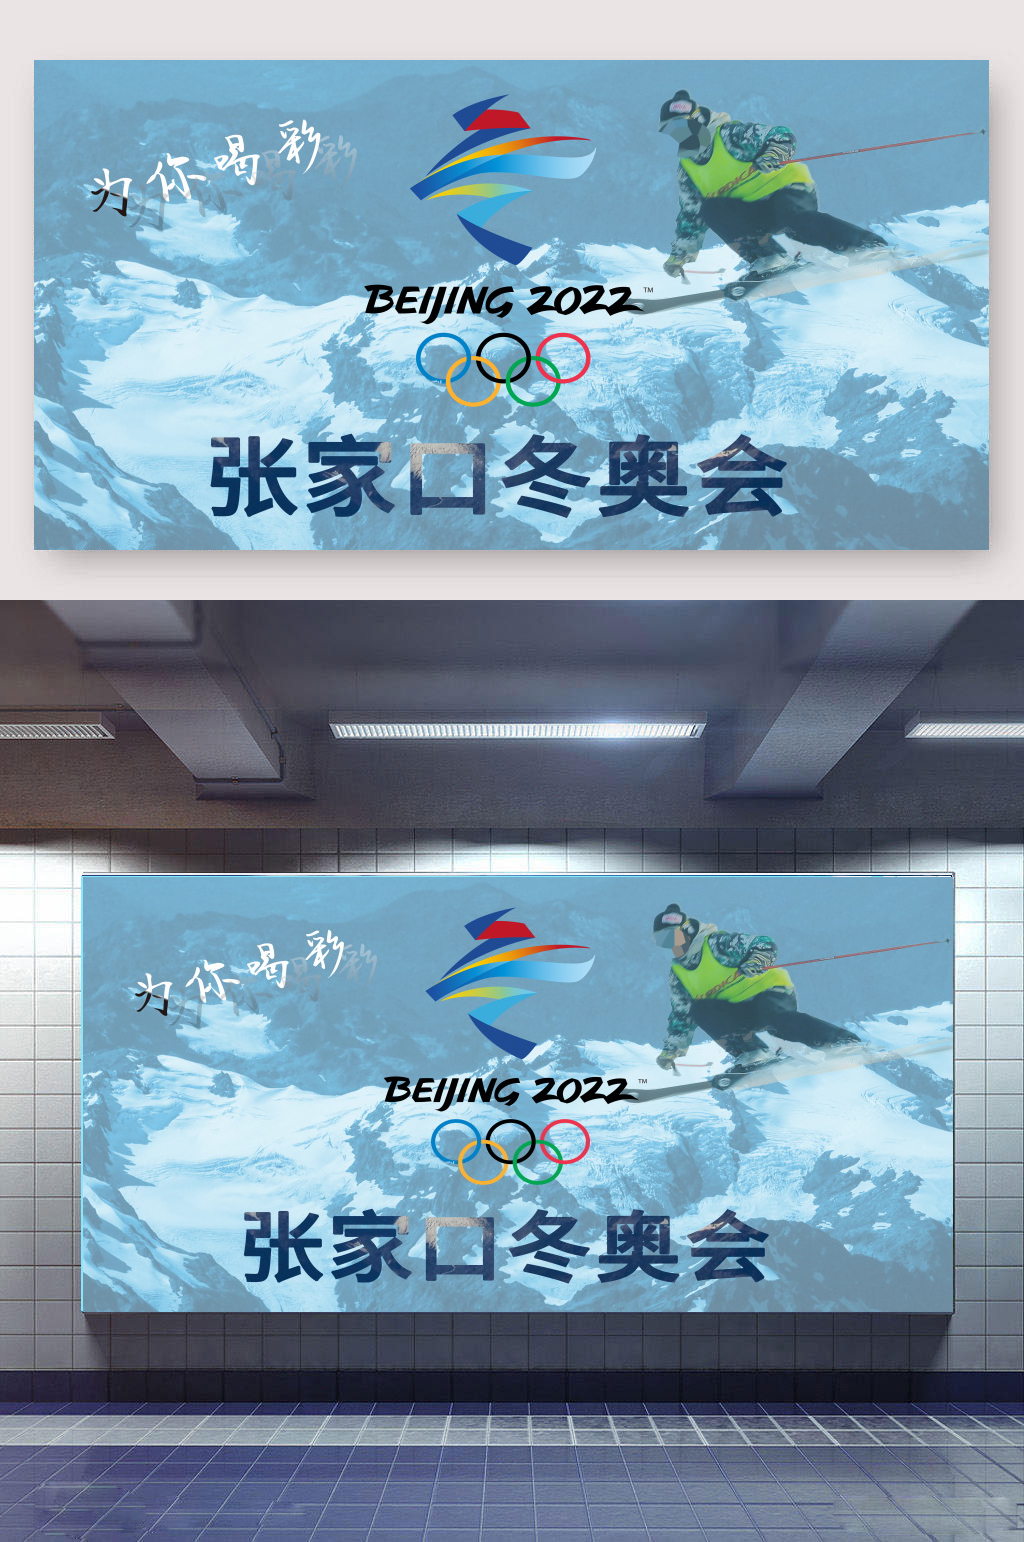 冬奥会展板内容图片